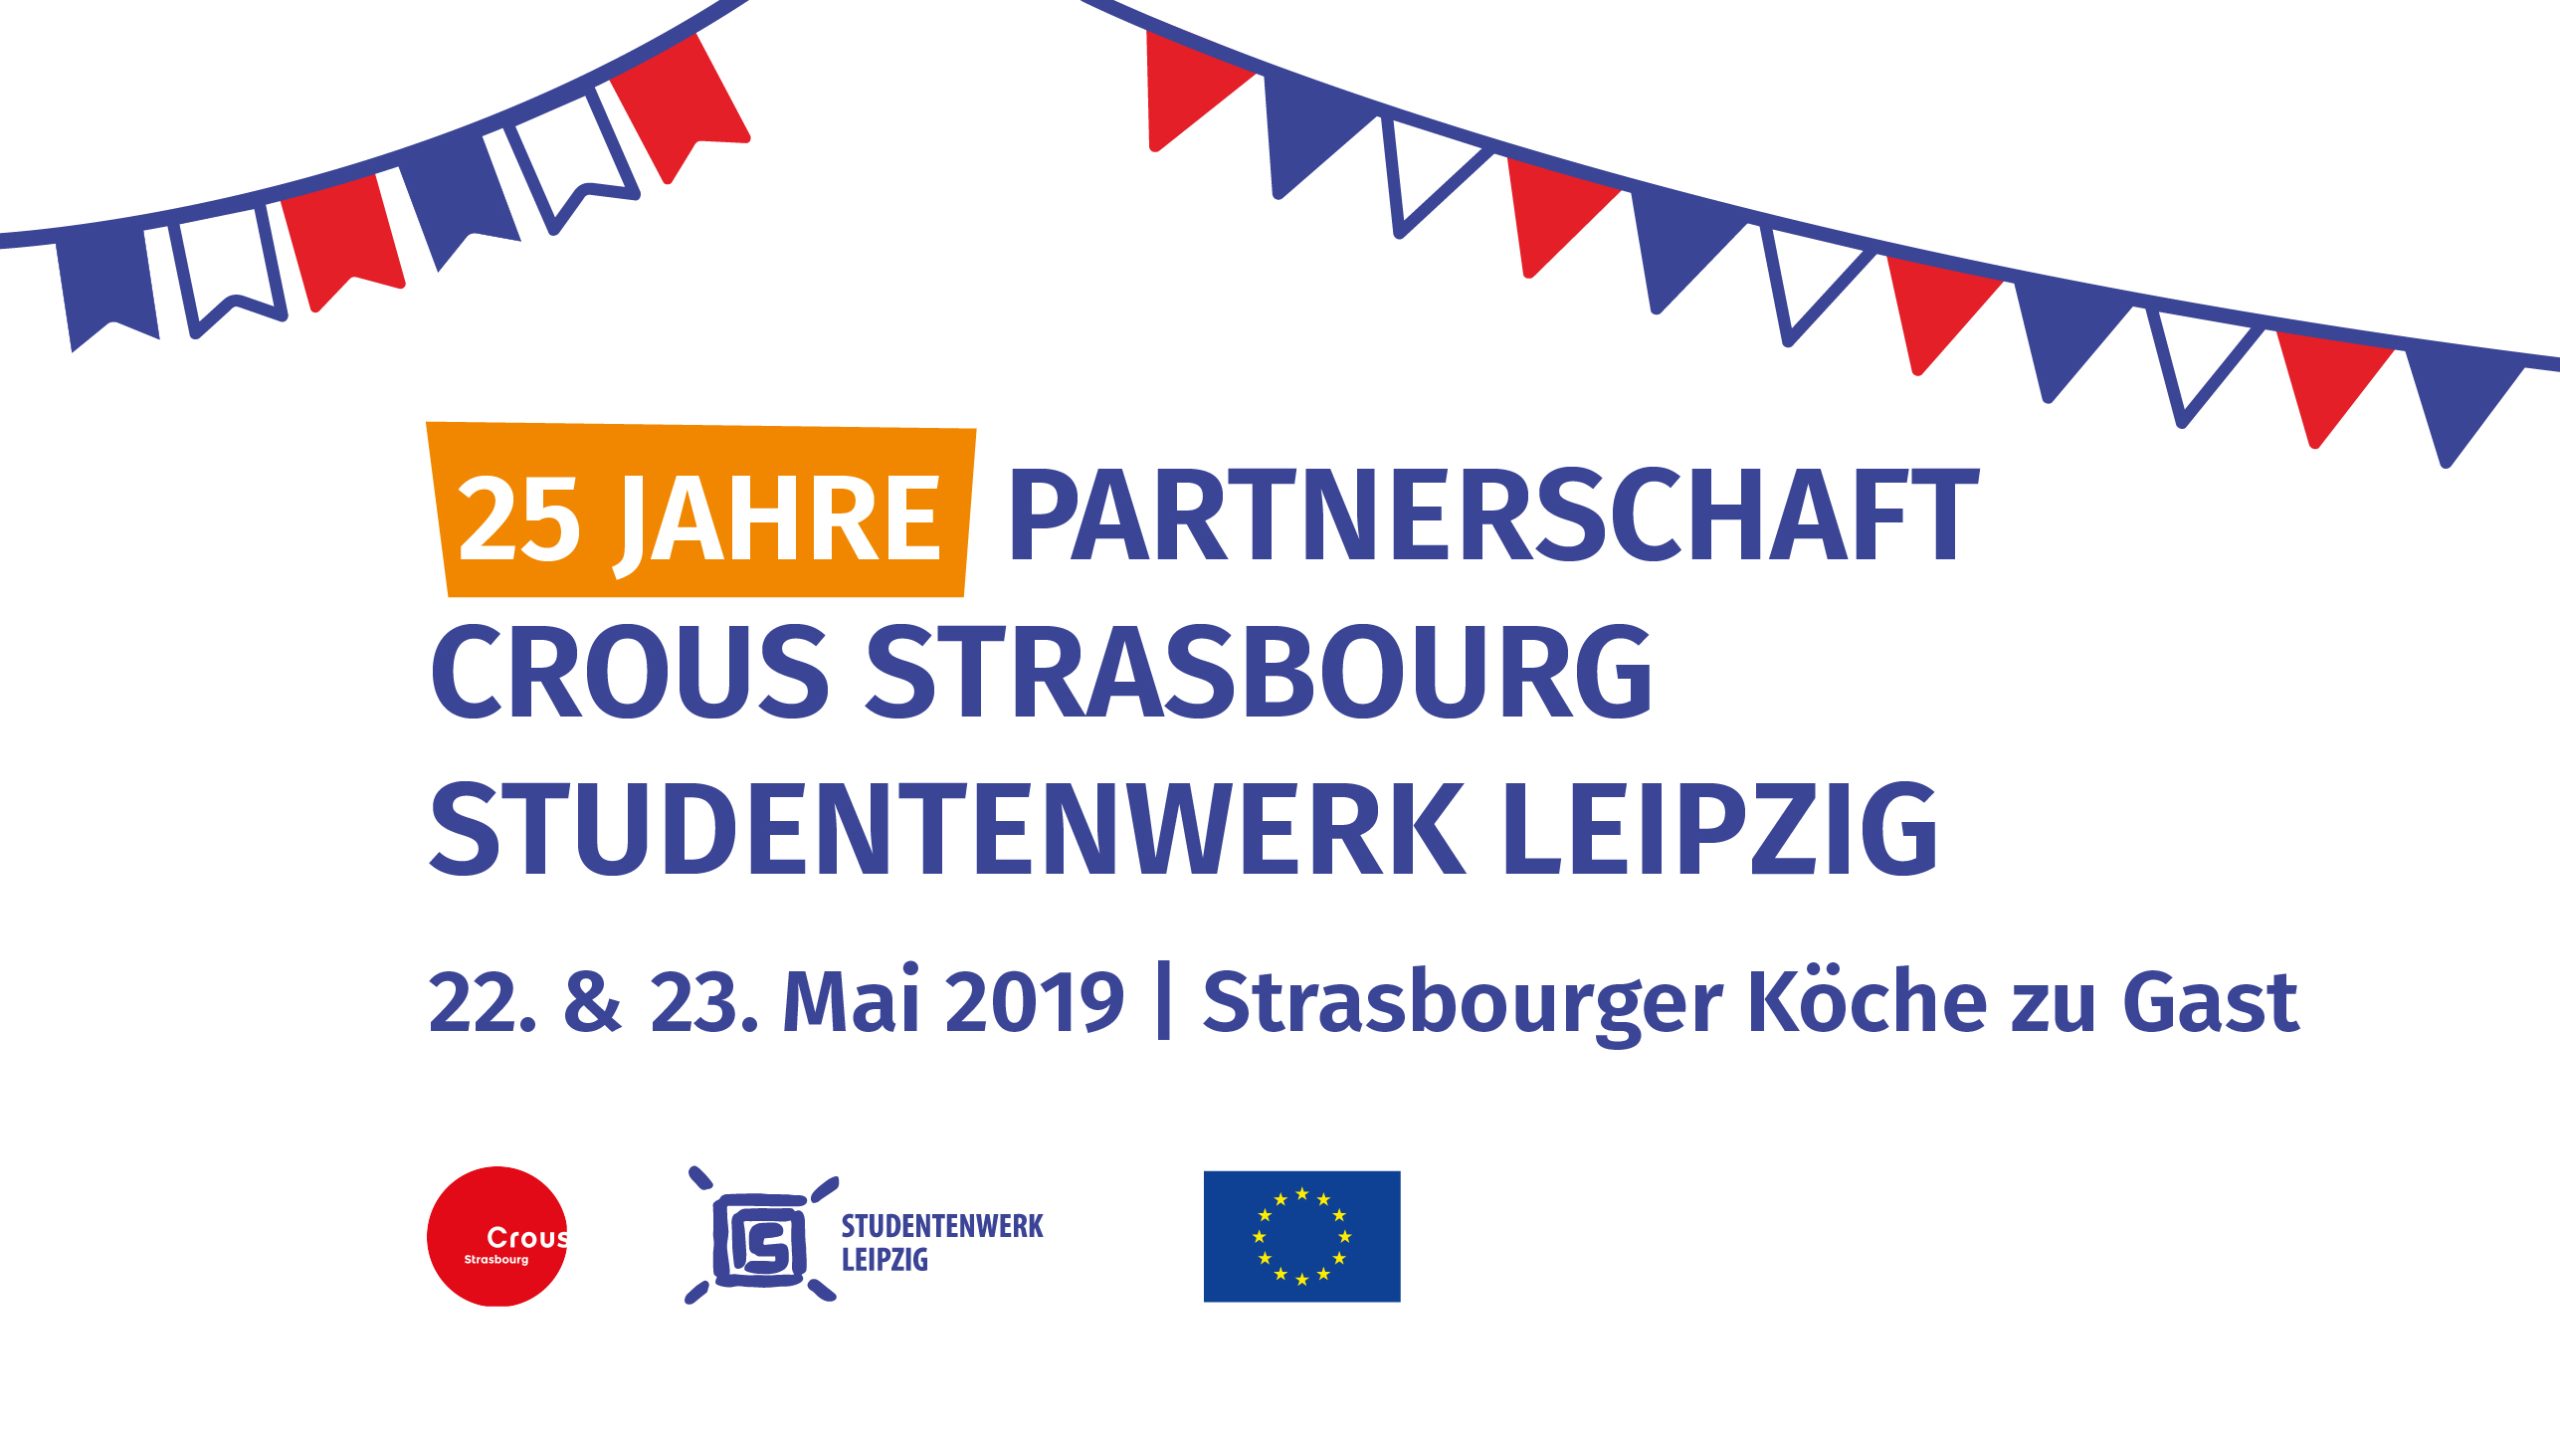 Grafik mit Hinweis auf die 25-jährige Partnerschaft zwischen Crous Strasbourg und Studentenwerk Leipzig. Strasbourger Köche zu Gast